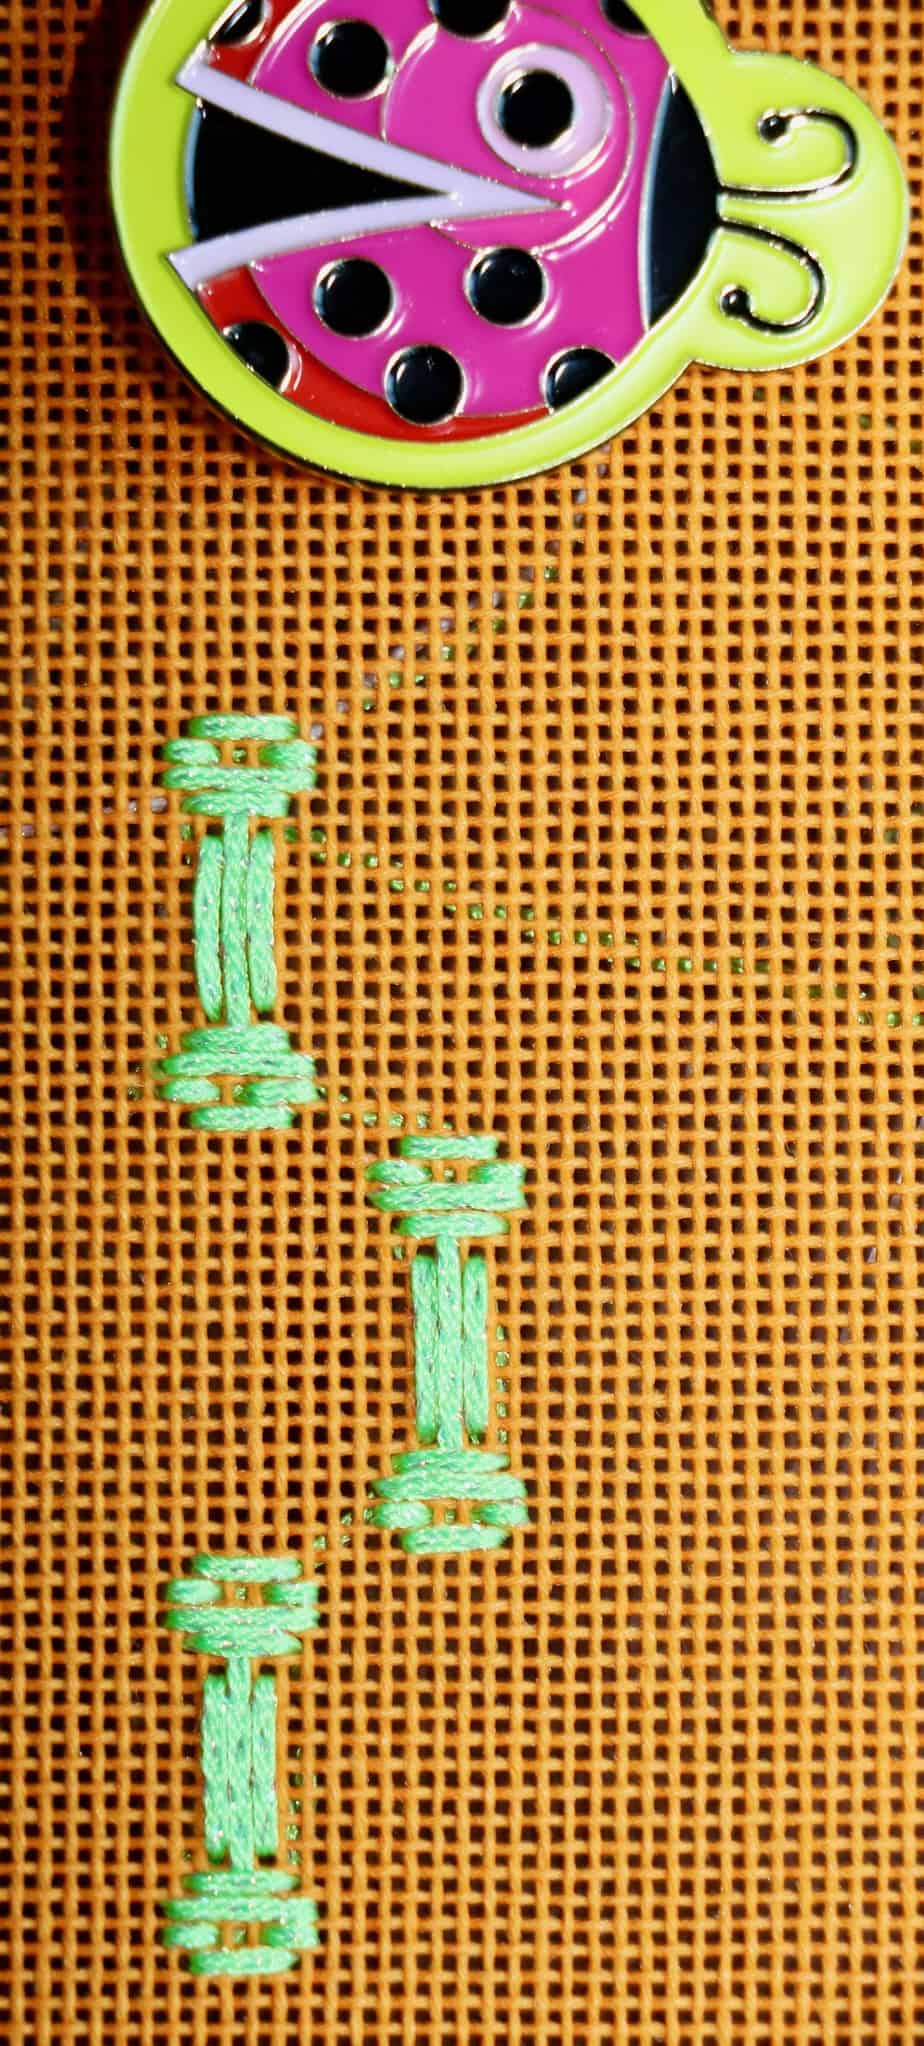 Bones stitched into orange needlepoint canvas, ladybug magnet on the upper side of the photo.